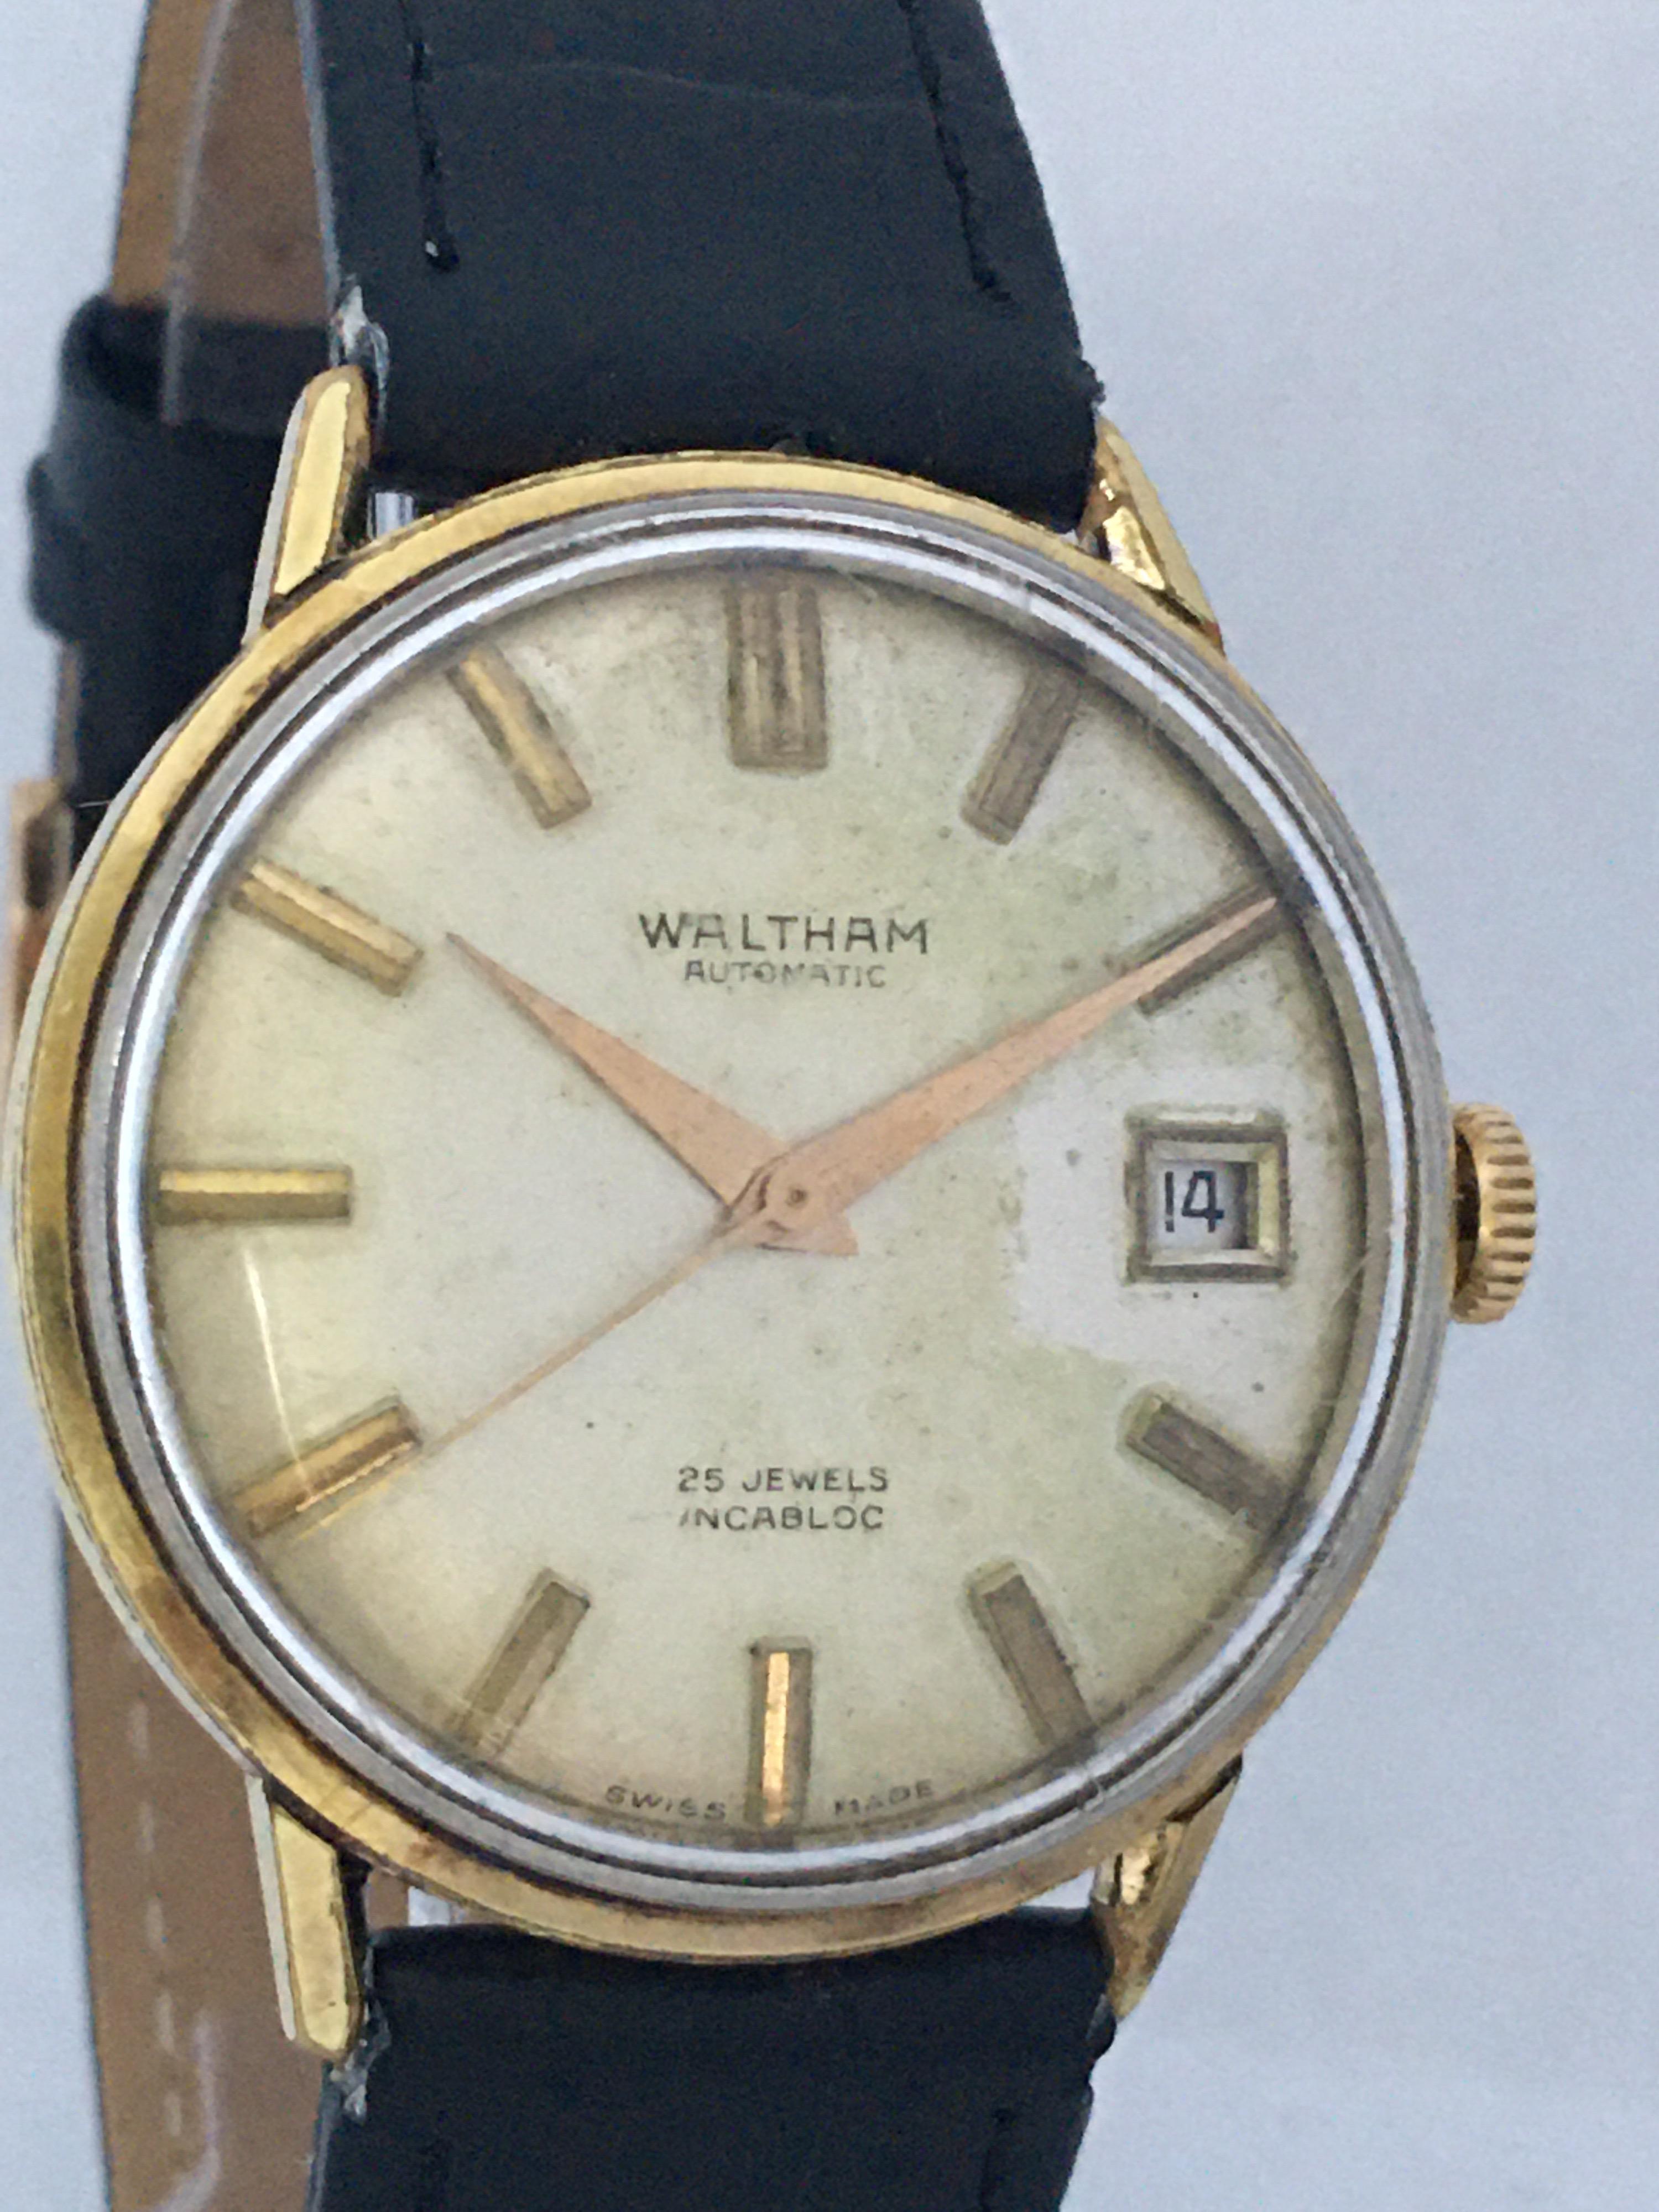 waltham 25 jewel wrist watch